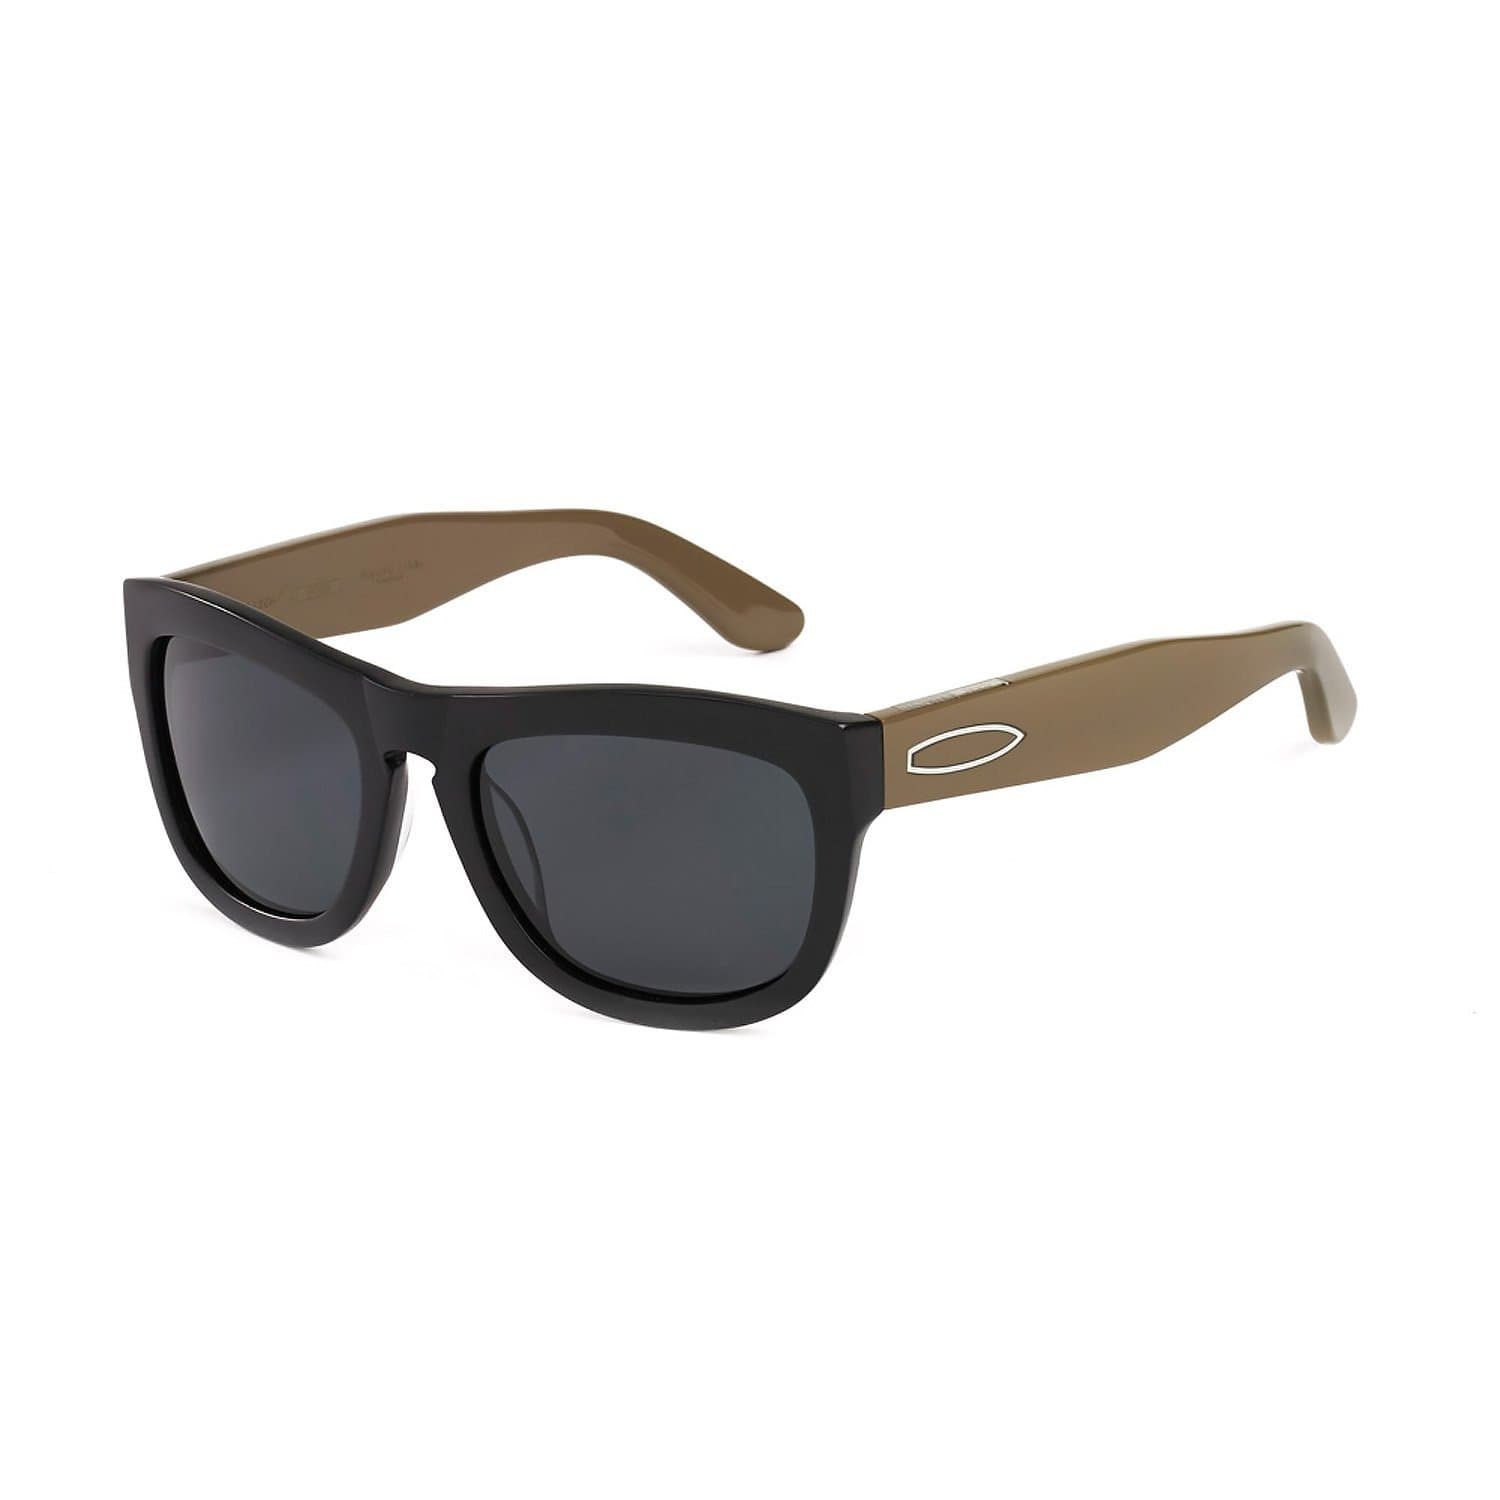 Hang Ten Gold Apparel : Eyewear - Sunglasses Hang Ten Gold Papa He e Nalu-Matte Black/Smoke Lens